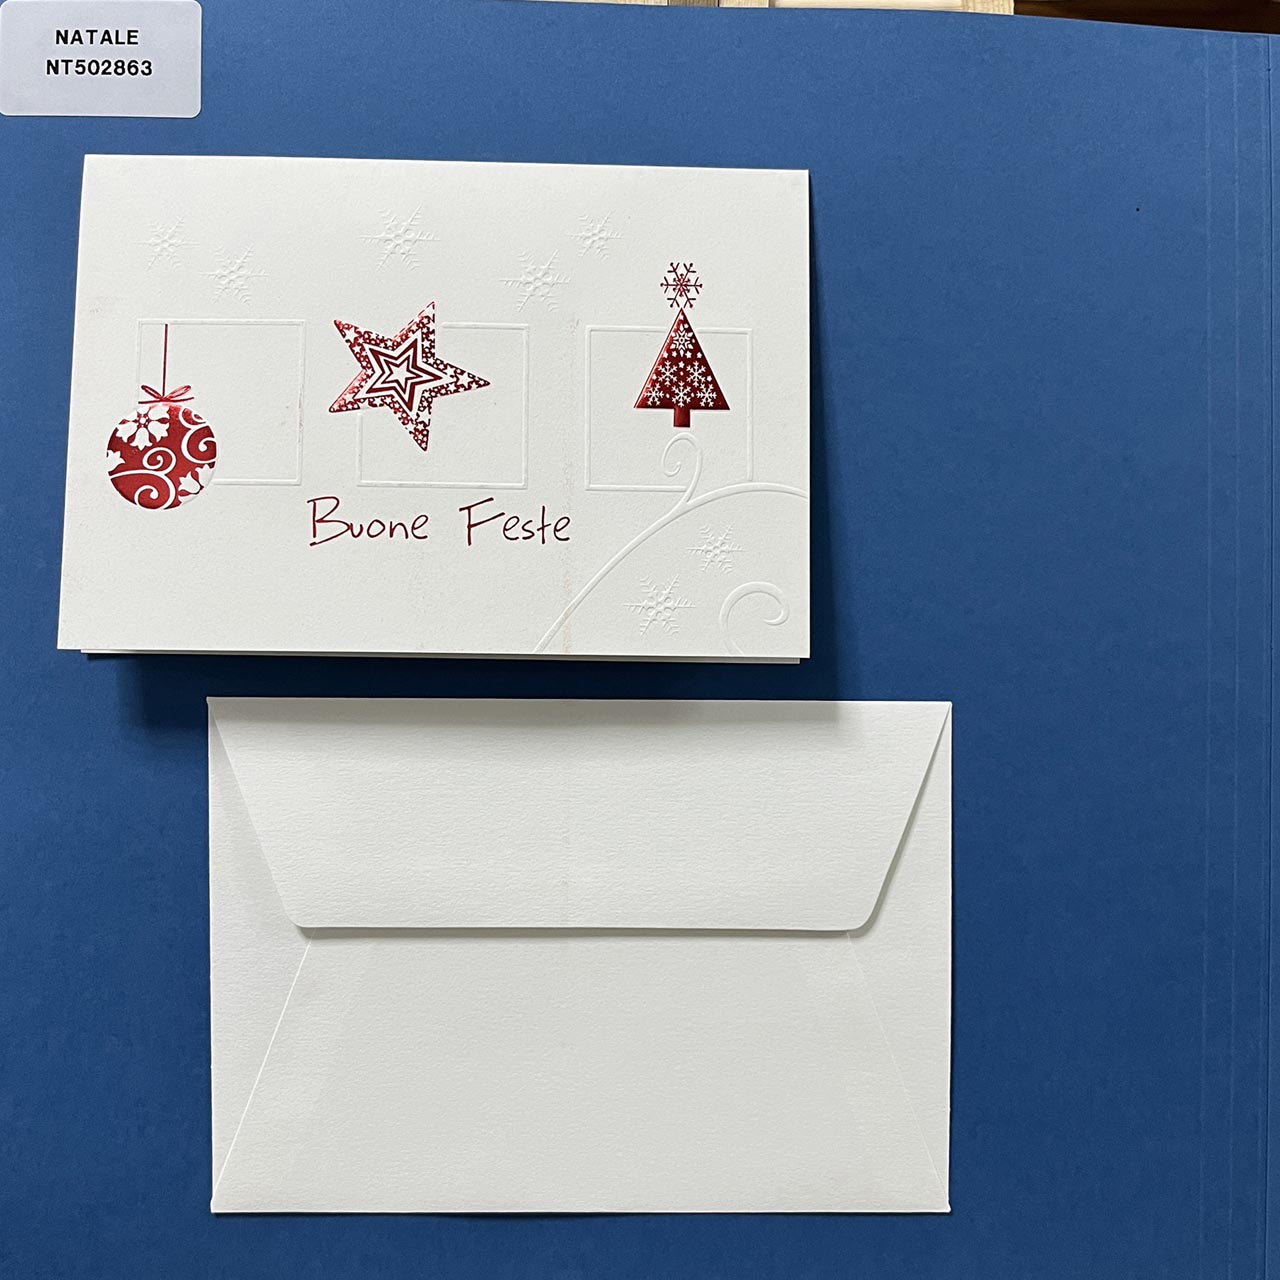 Elegante biglietto di Natale su carta martellata con particolari a rilievo tono su tono, personalizzabile all'interno. in copertina una simpatica illustrazione con piccoli particolari natalizi a rilievo, di colore rosso.